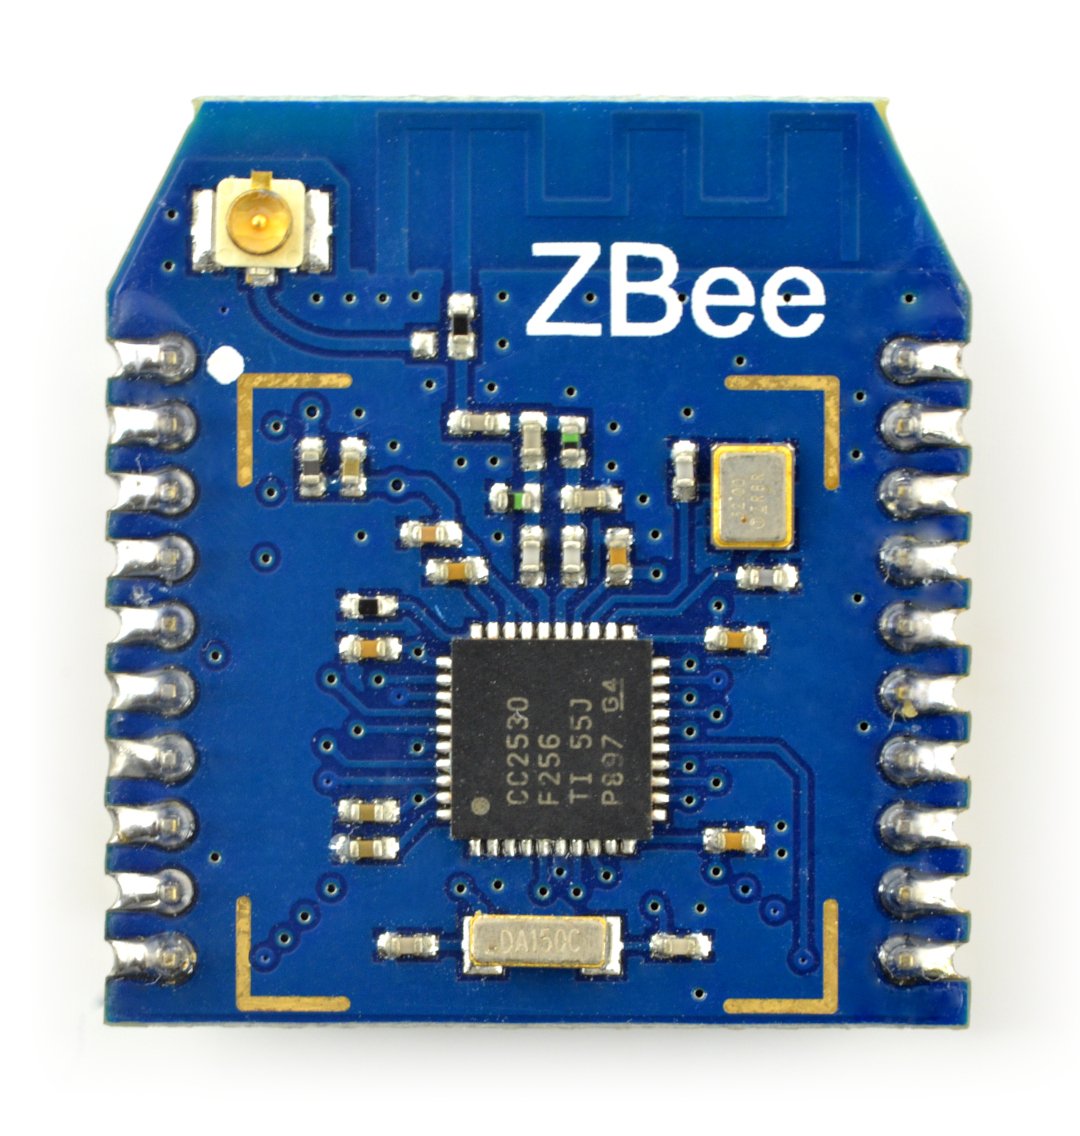 Core2530 - Funkmodul mit dem ZigBee-Protokoll